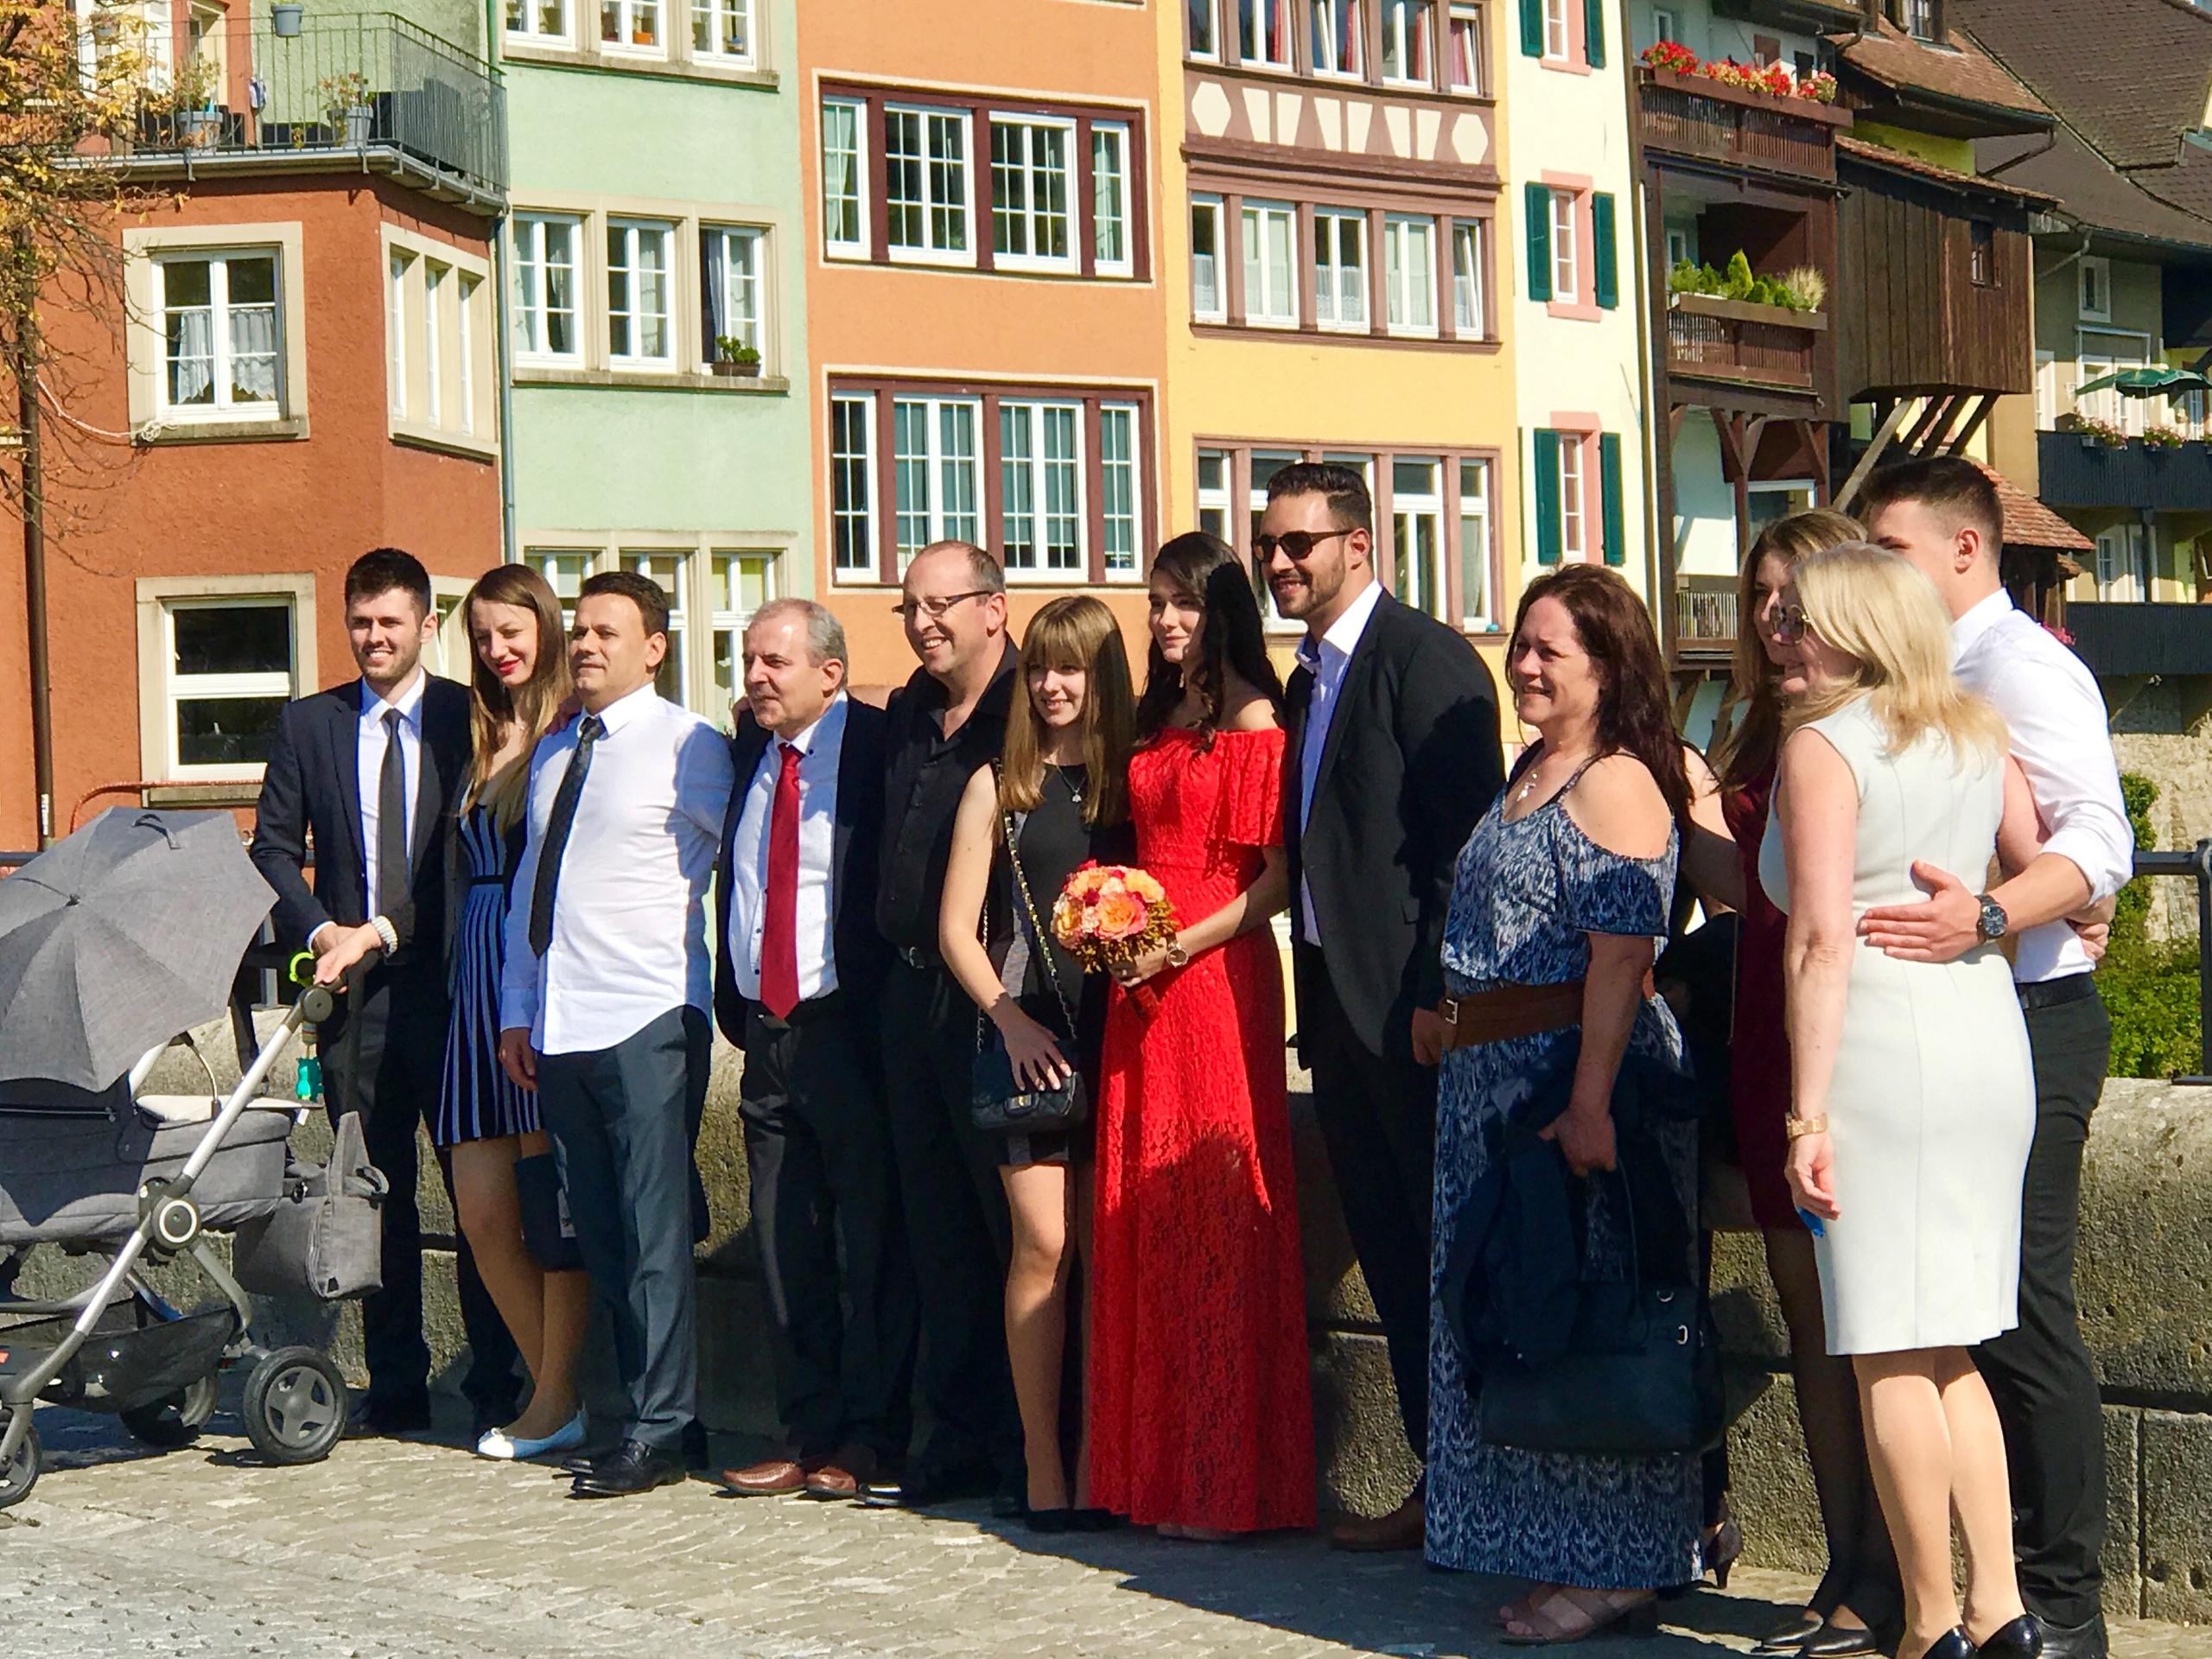 来到瑞士与德国交界的同名姊妹小镇劳芬堡(Laufenburg)，莱茵河一段狭窄处的Rhein石桥让这两座姊妹城市牵起手来。在两国交界的桥上，还目睹了德瑞联姻的一场婚礼。